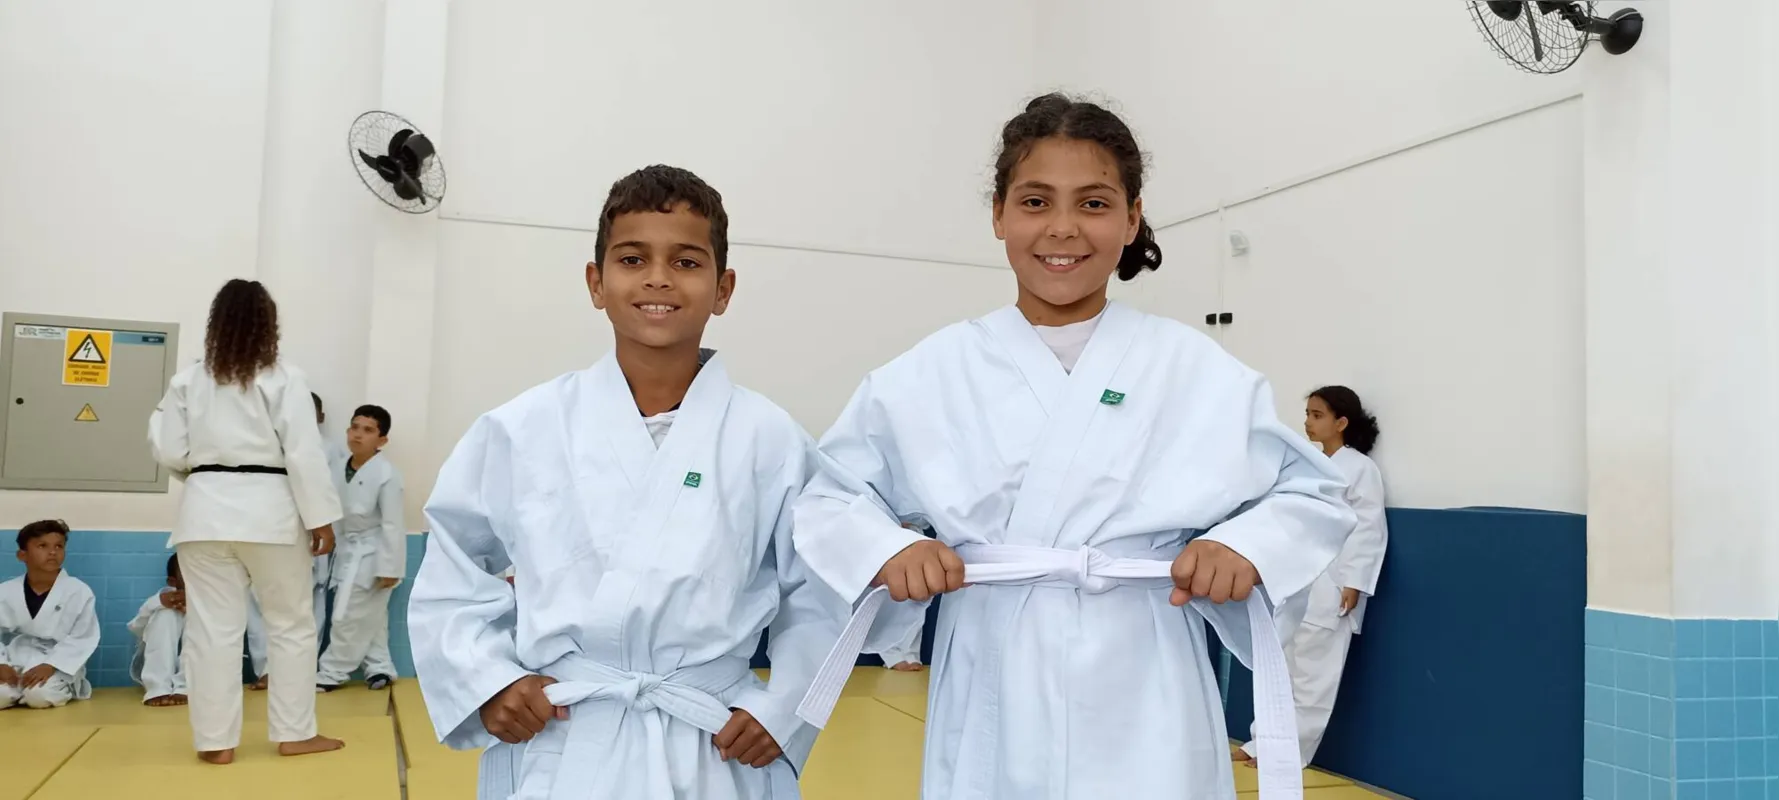 Cesar Samuel da Silva Teles e Vitória Gabriely da Silva, da Escola Municipal Américo Sabino Coimbra, amarram orgulhosos a faixa do quimono: aprender para evoluir